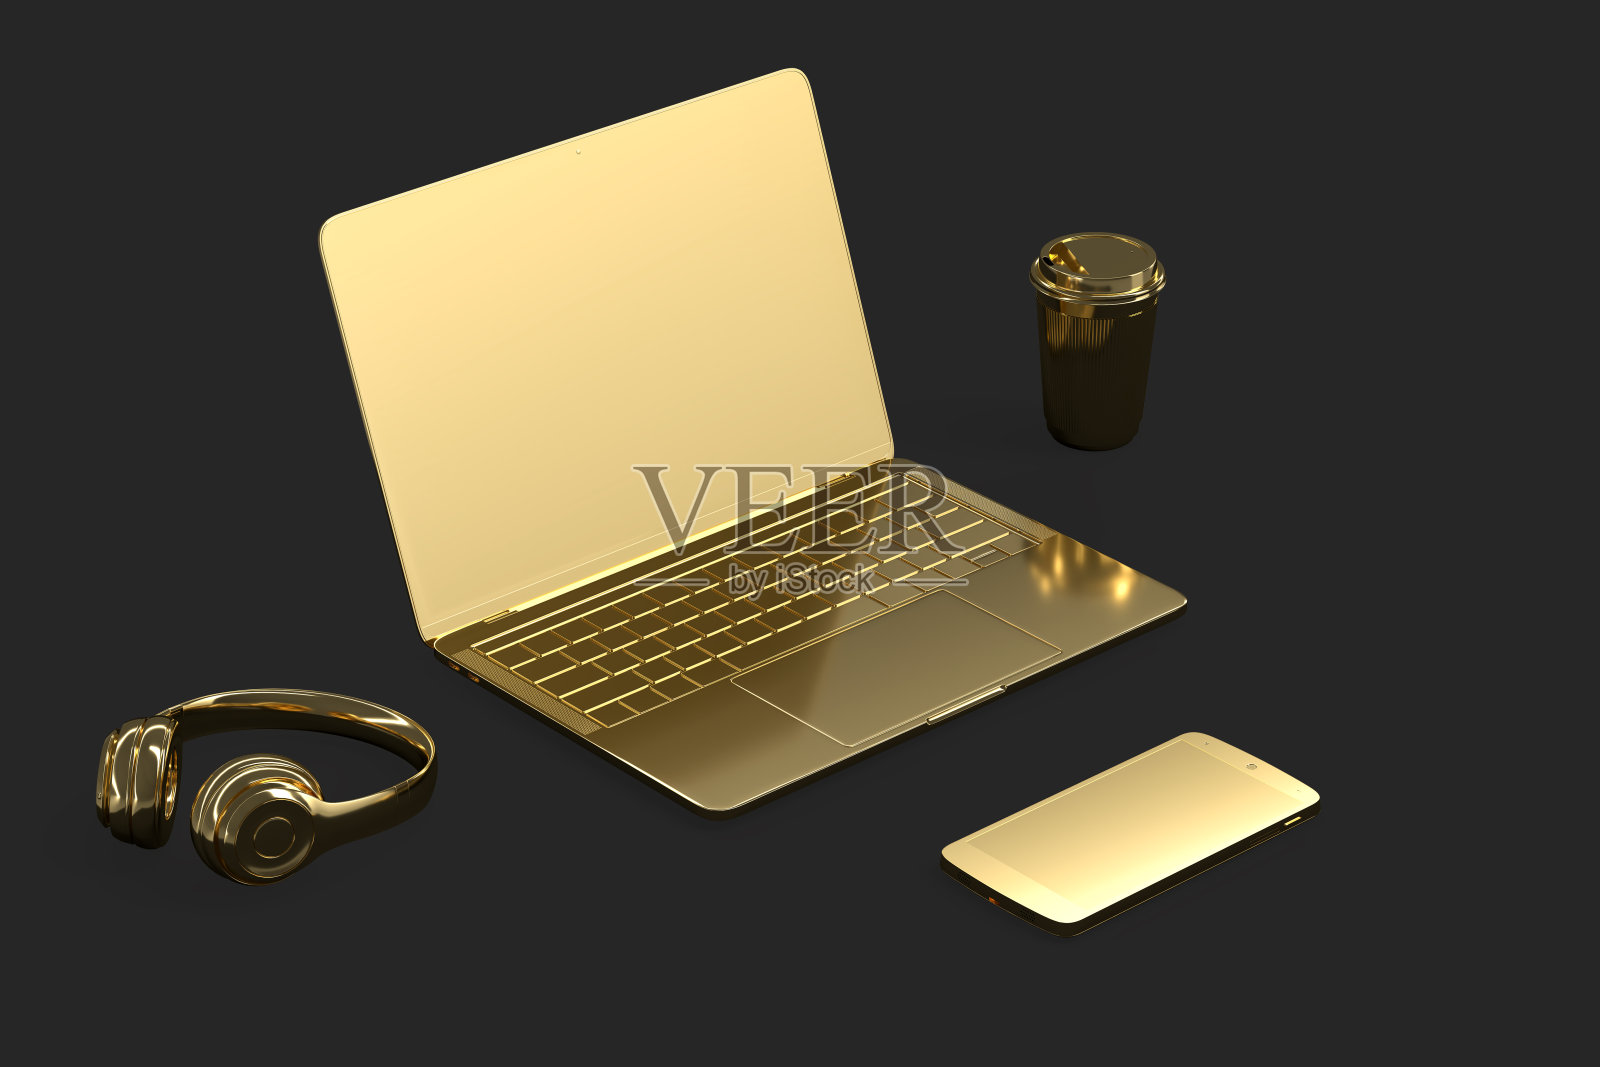 极简主义插图的金色笔记本电脑和配件。三维演示照片摄影图片